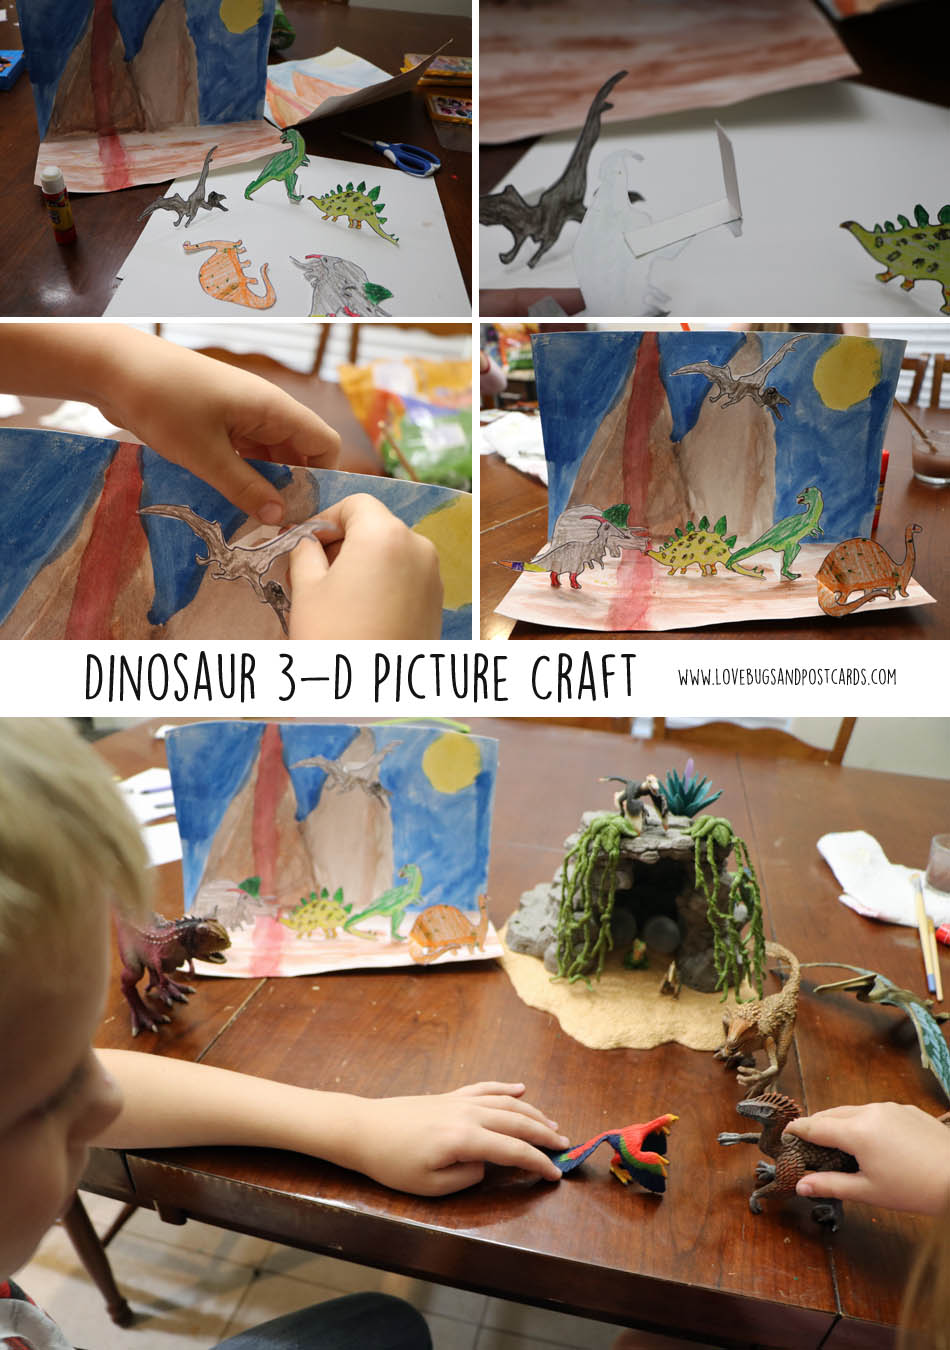 Dinosaur 3-D Picture Craft inspired by Schleich